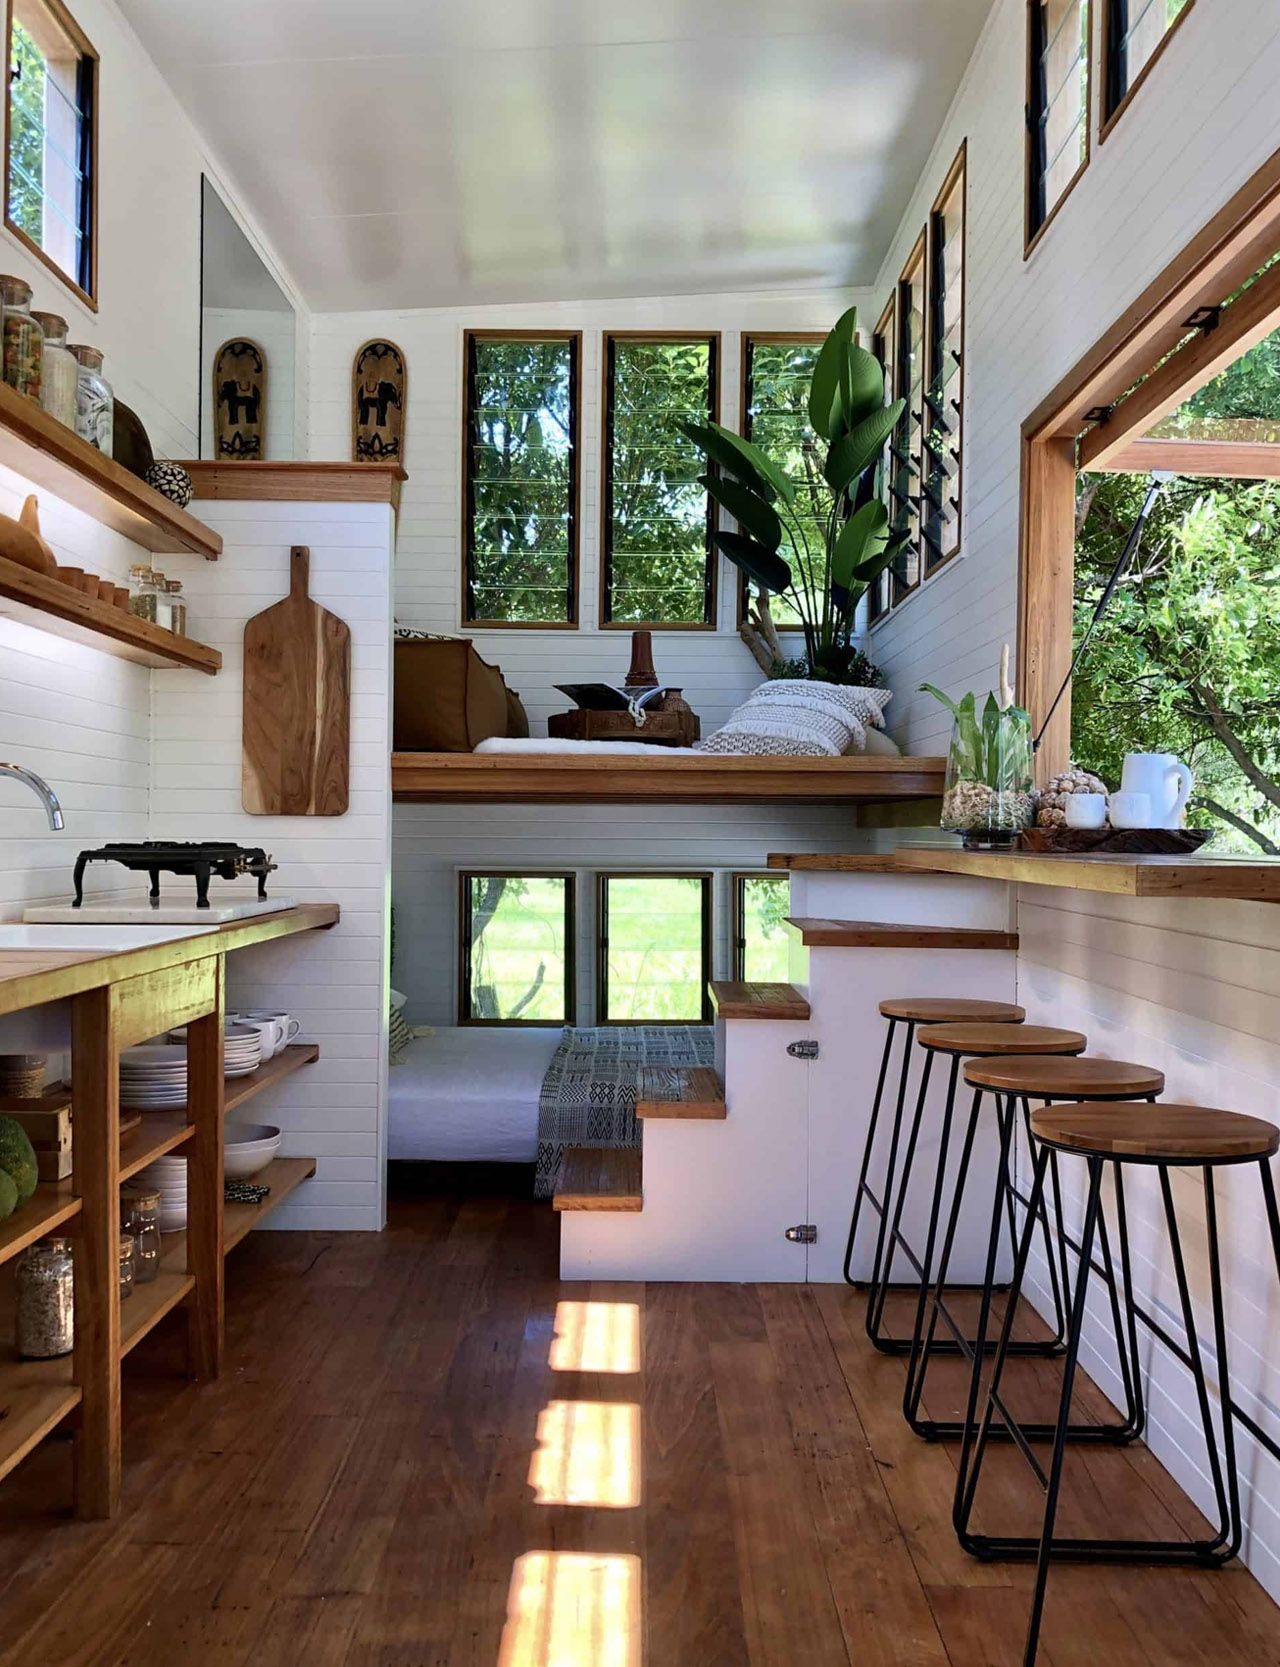 https://www.yankodesign.com/images/design_news/2021/07/tiny-home-interiors/tiny_home_interiors_ds_yanko_design-01.jpg